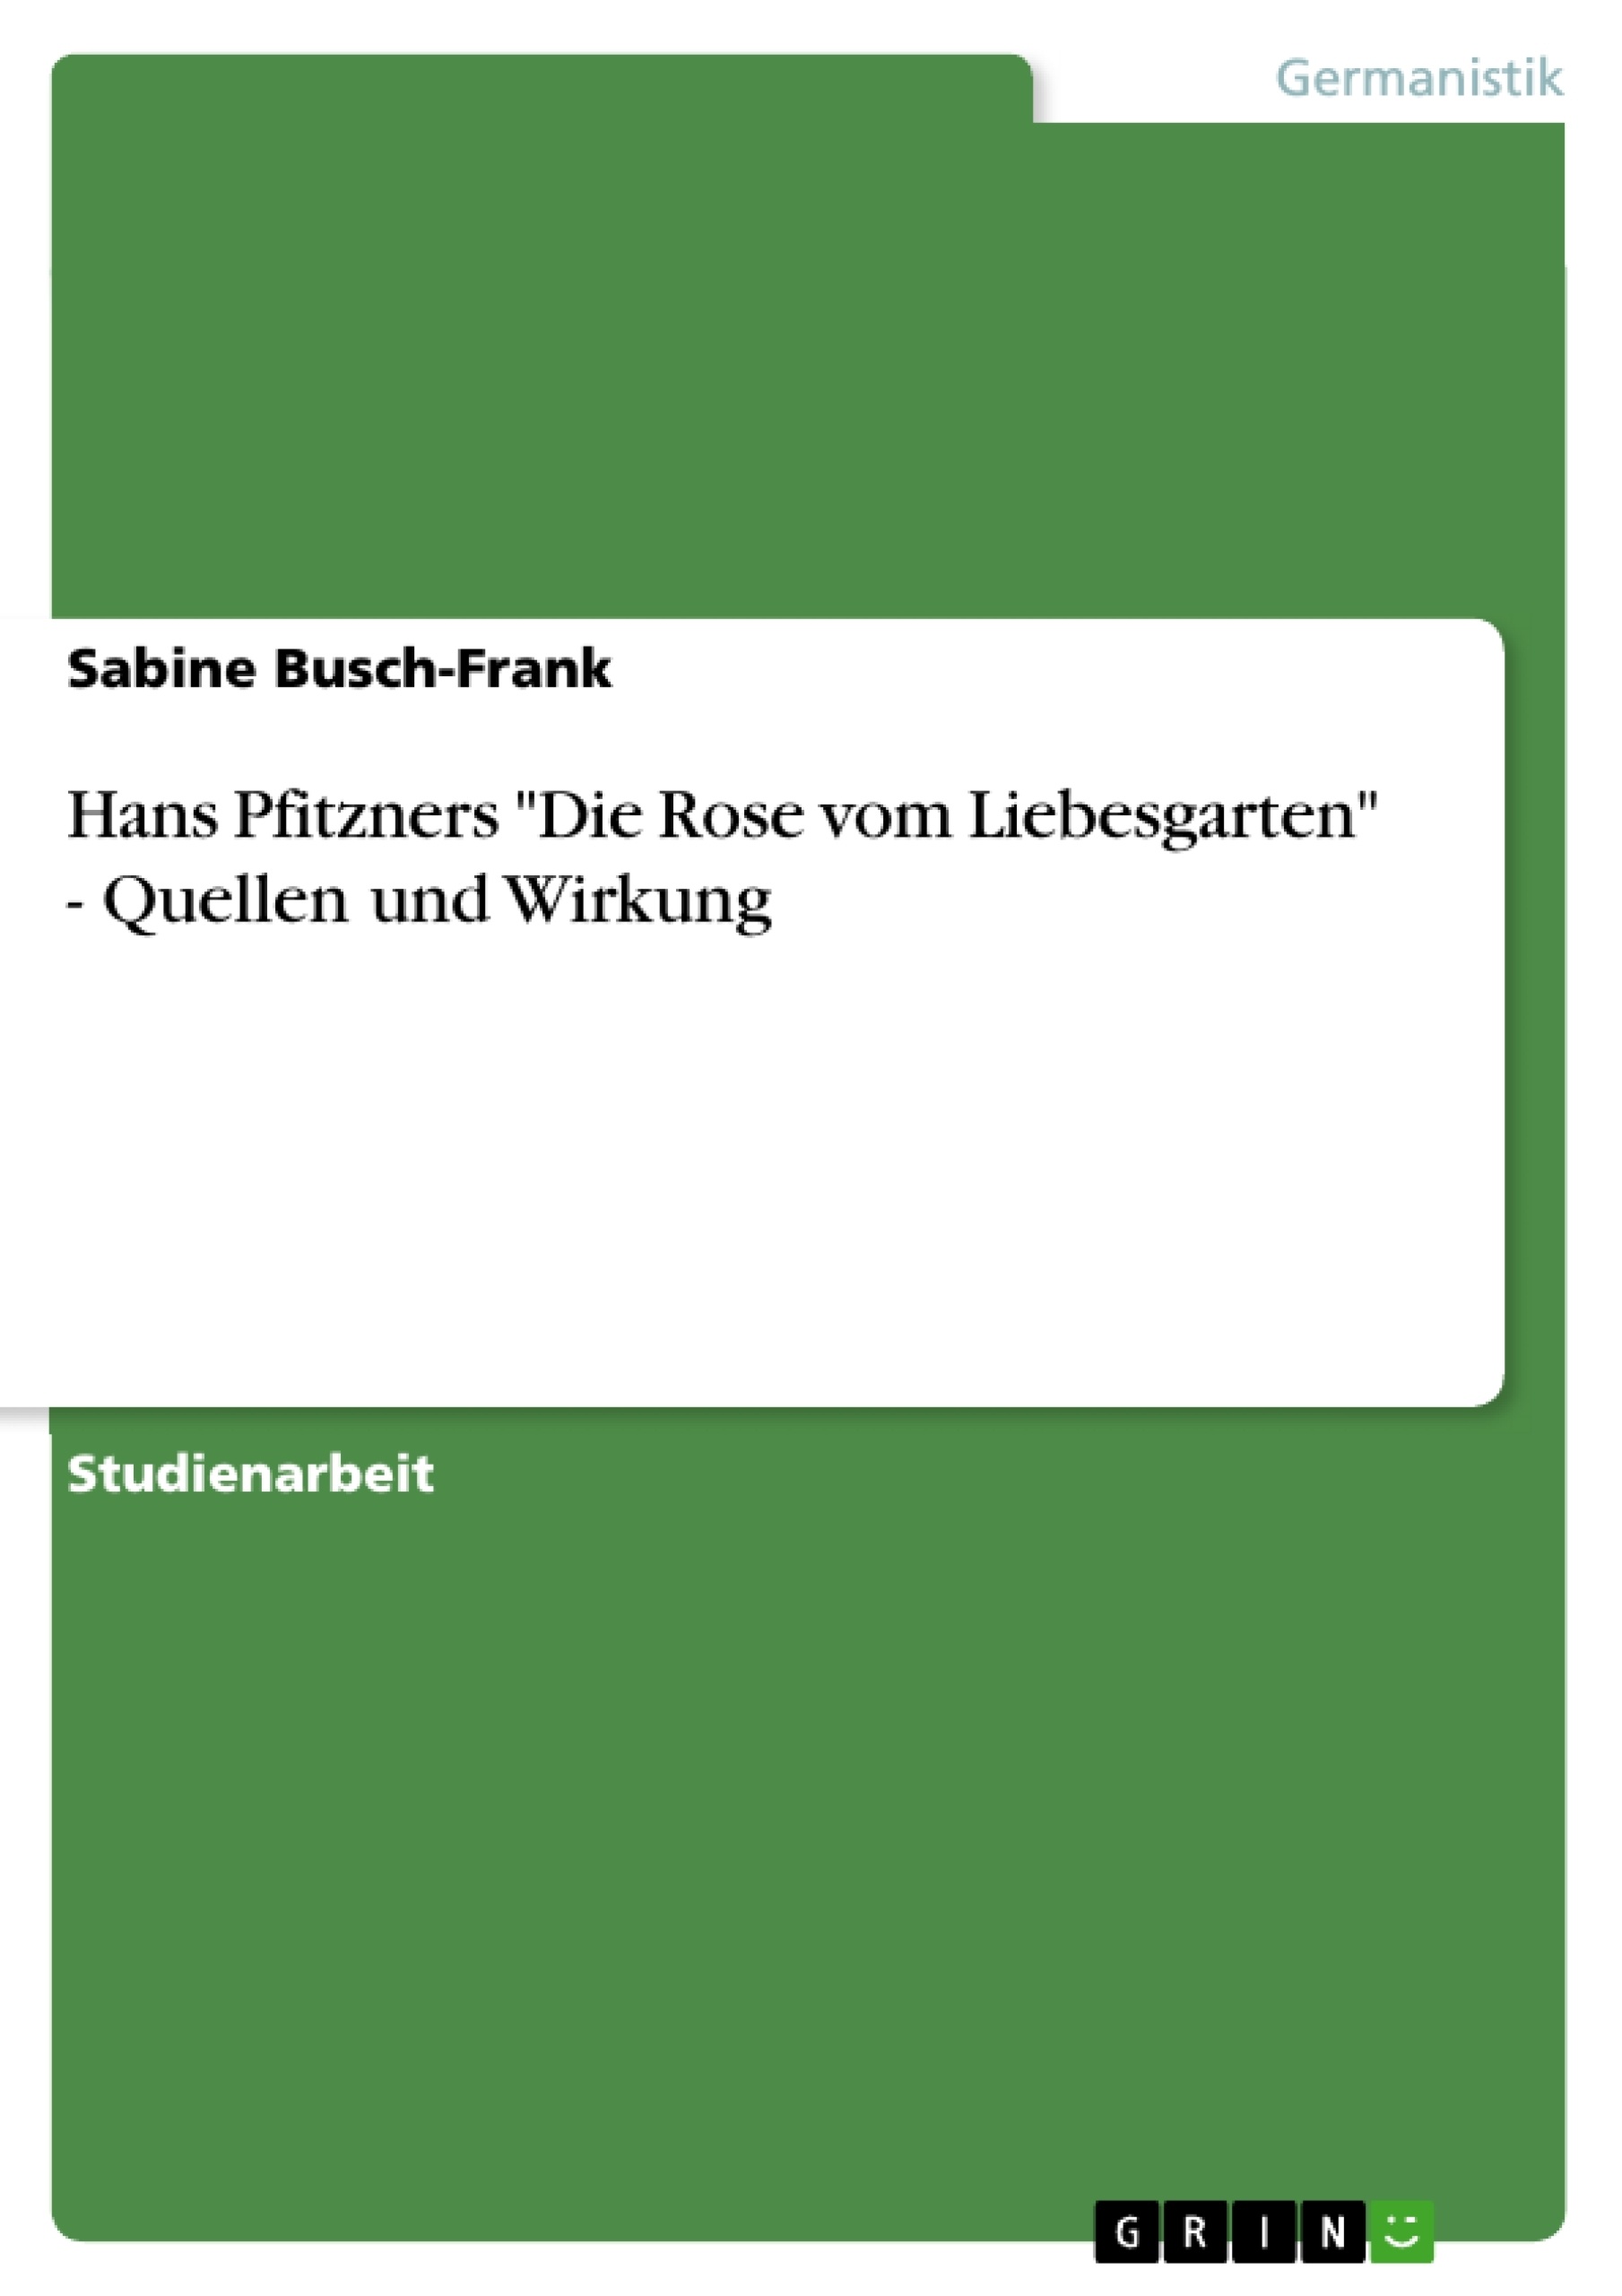 Título: Hans Pfitzners "Die Rose vom Liebesgarten" - Quellen und Wirkung